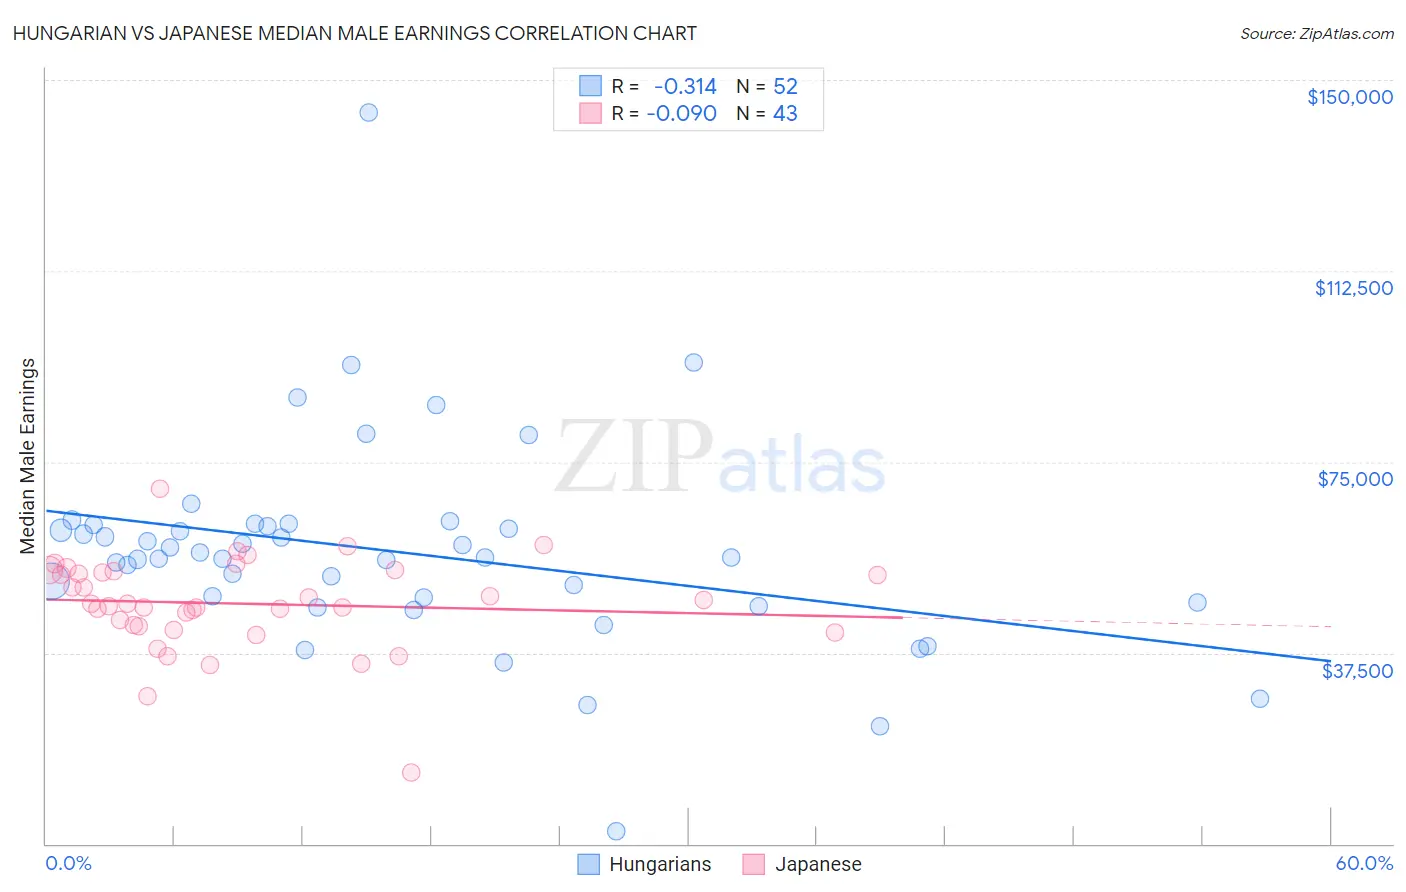 Hungarian vs Japanese Median Male Earnings